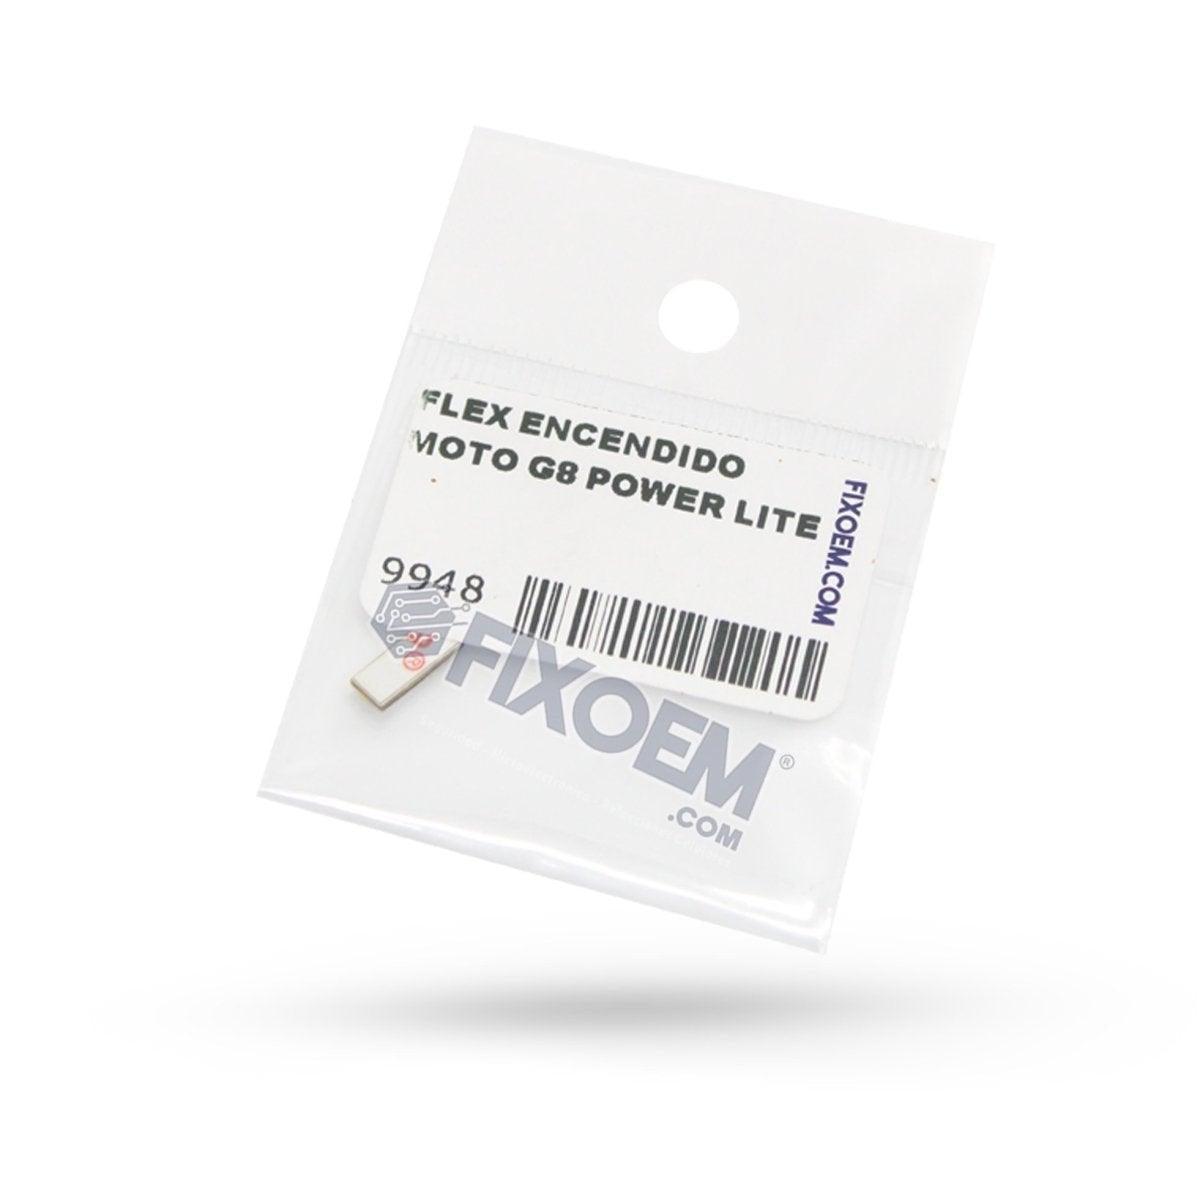 Flex Encendido Moto G8 Power Lite Xt2055 a solo $ 80.00 Refaccion y puestos celulares, refurbish y microelectronica.- FixOEM